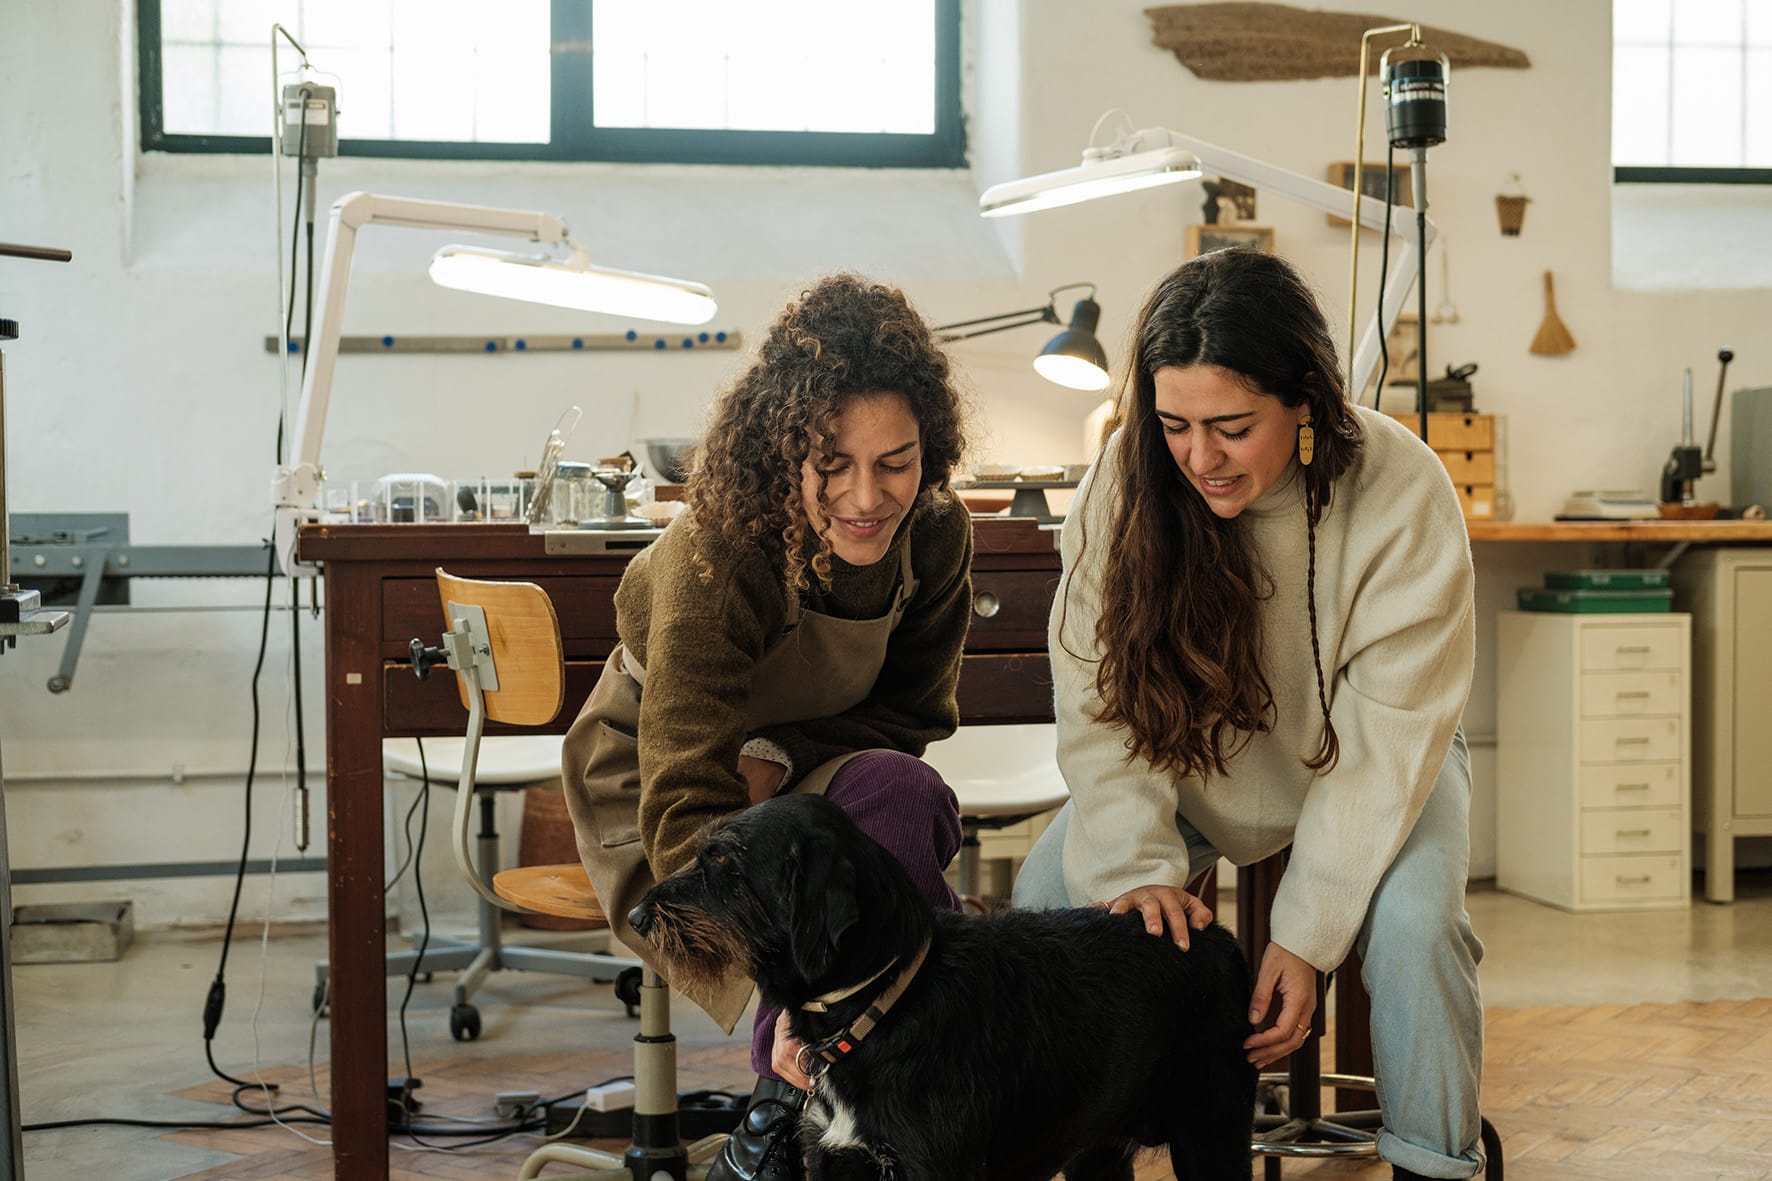 Inês Telles e a sua colega dão festas a um cão no atelier.